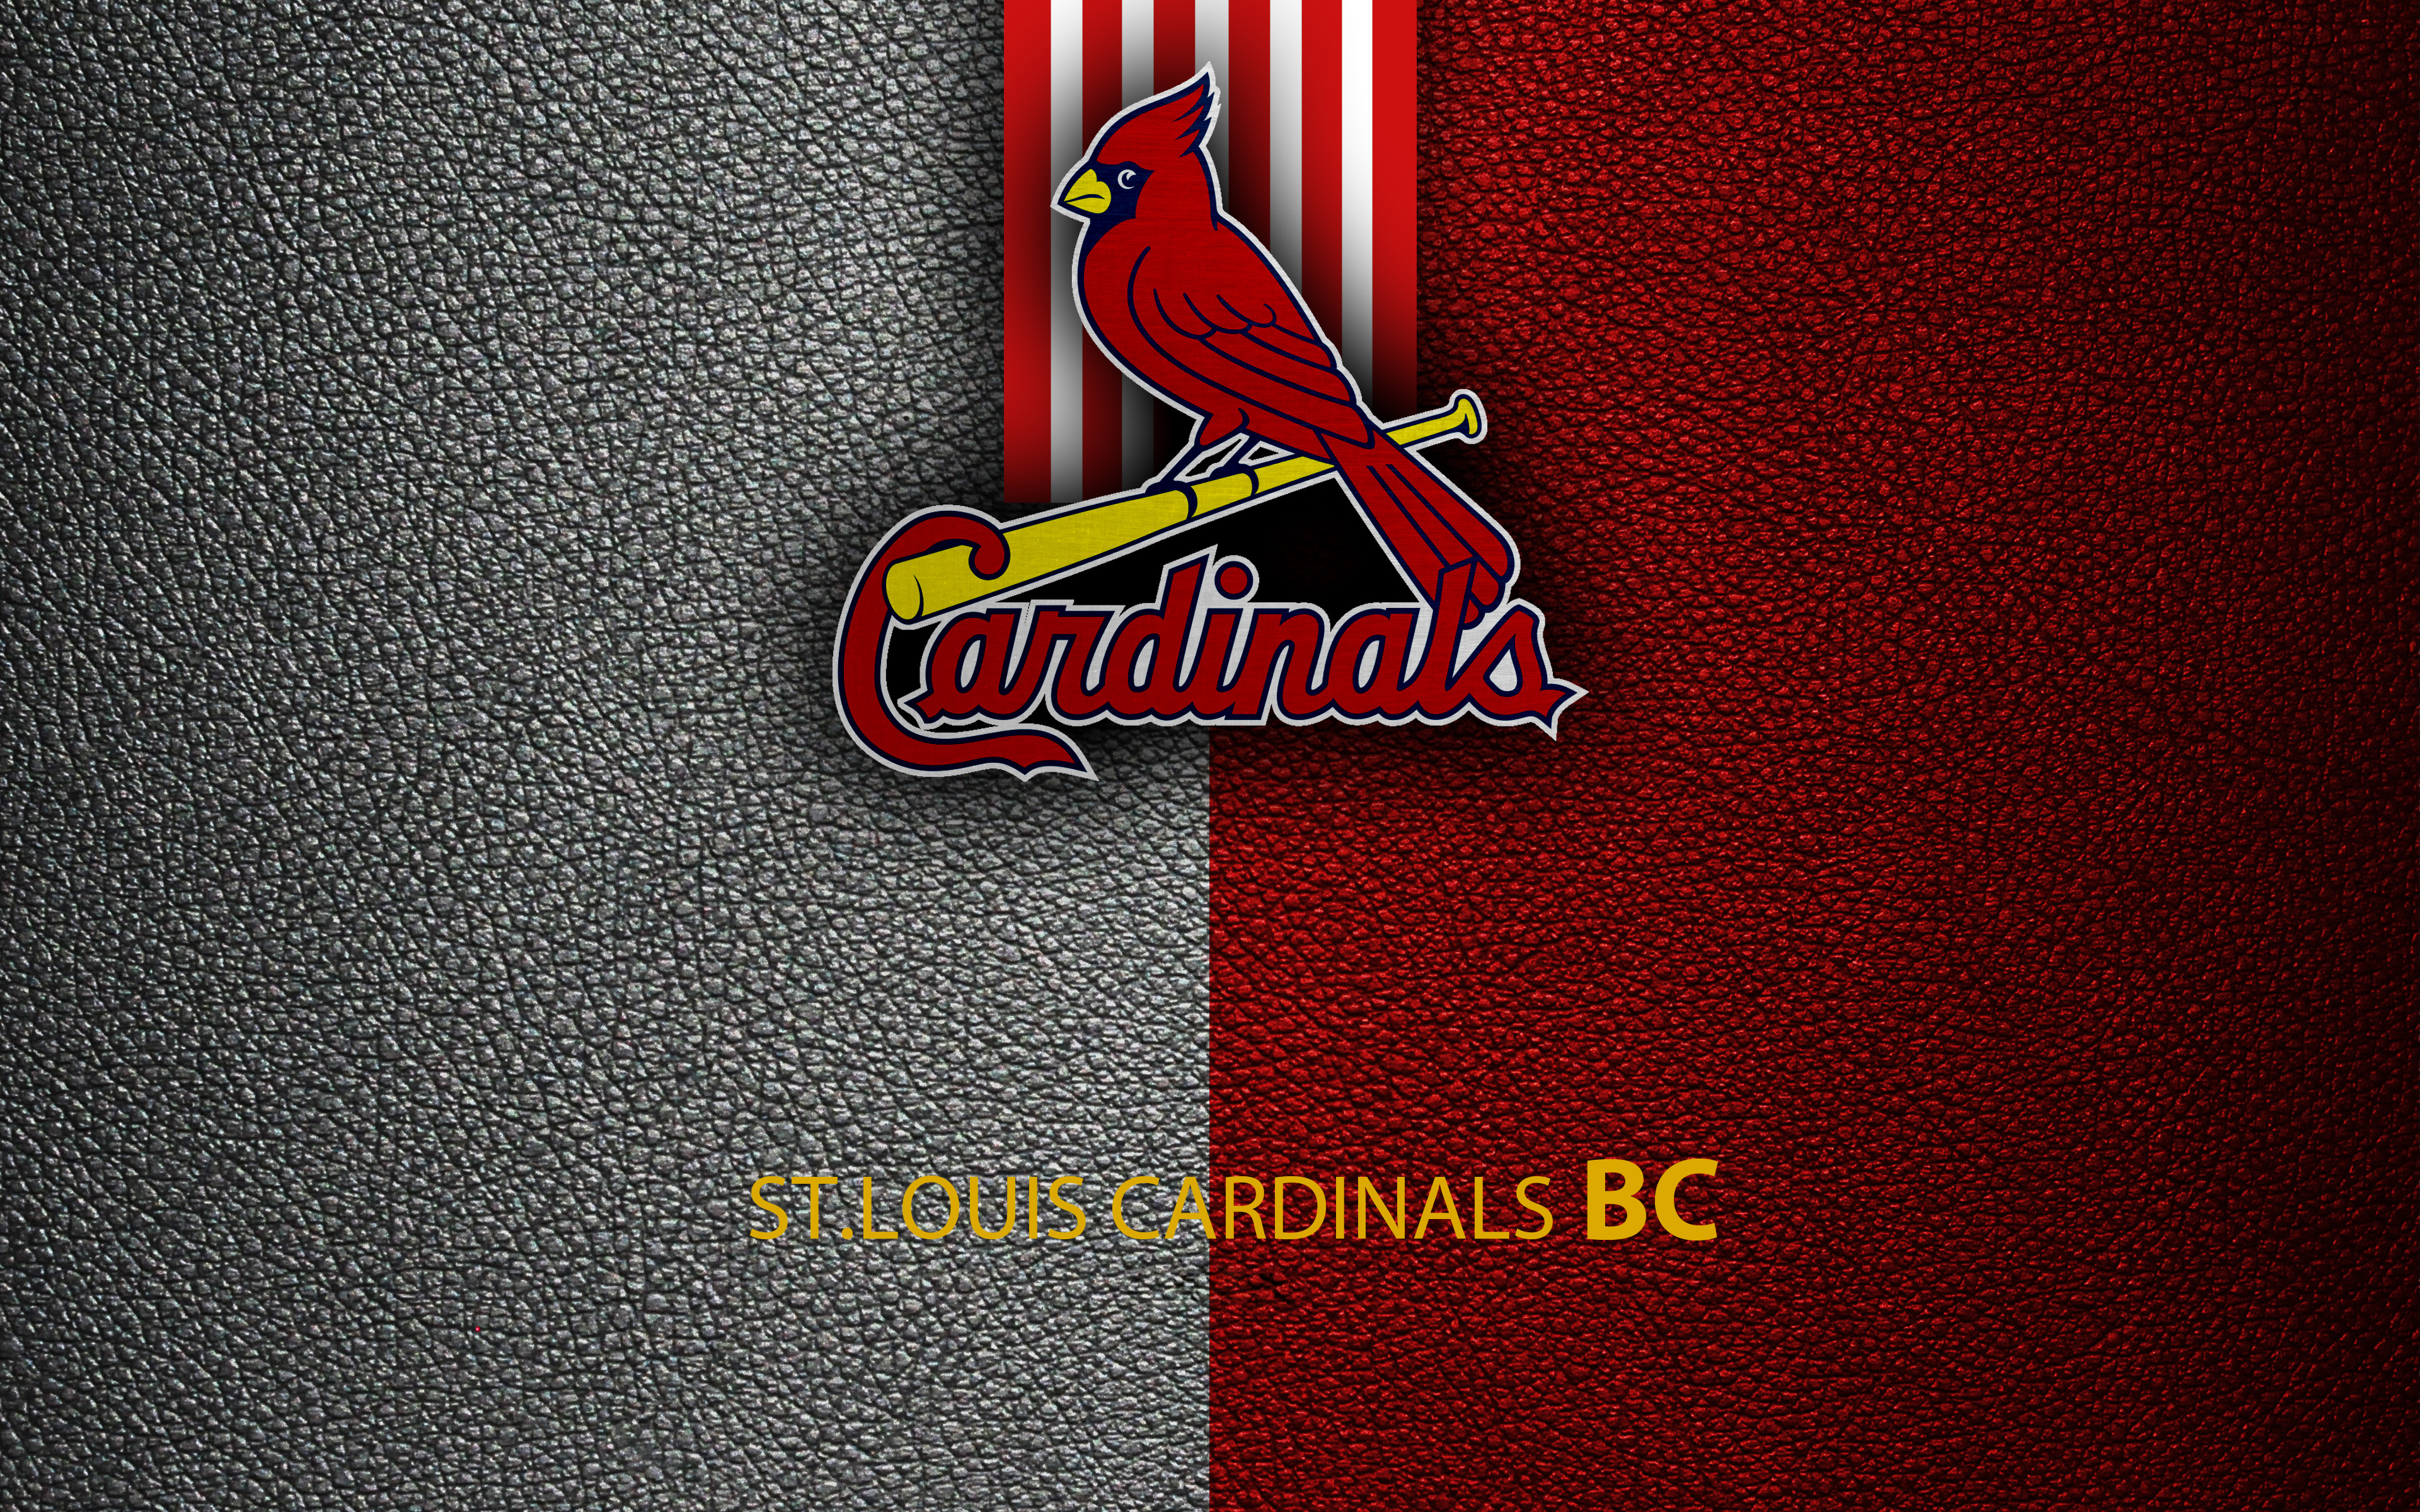 mlb, sports, st louis cardinals, baseball, logo